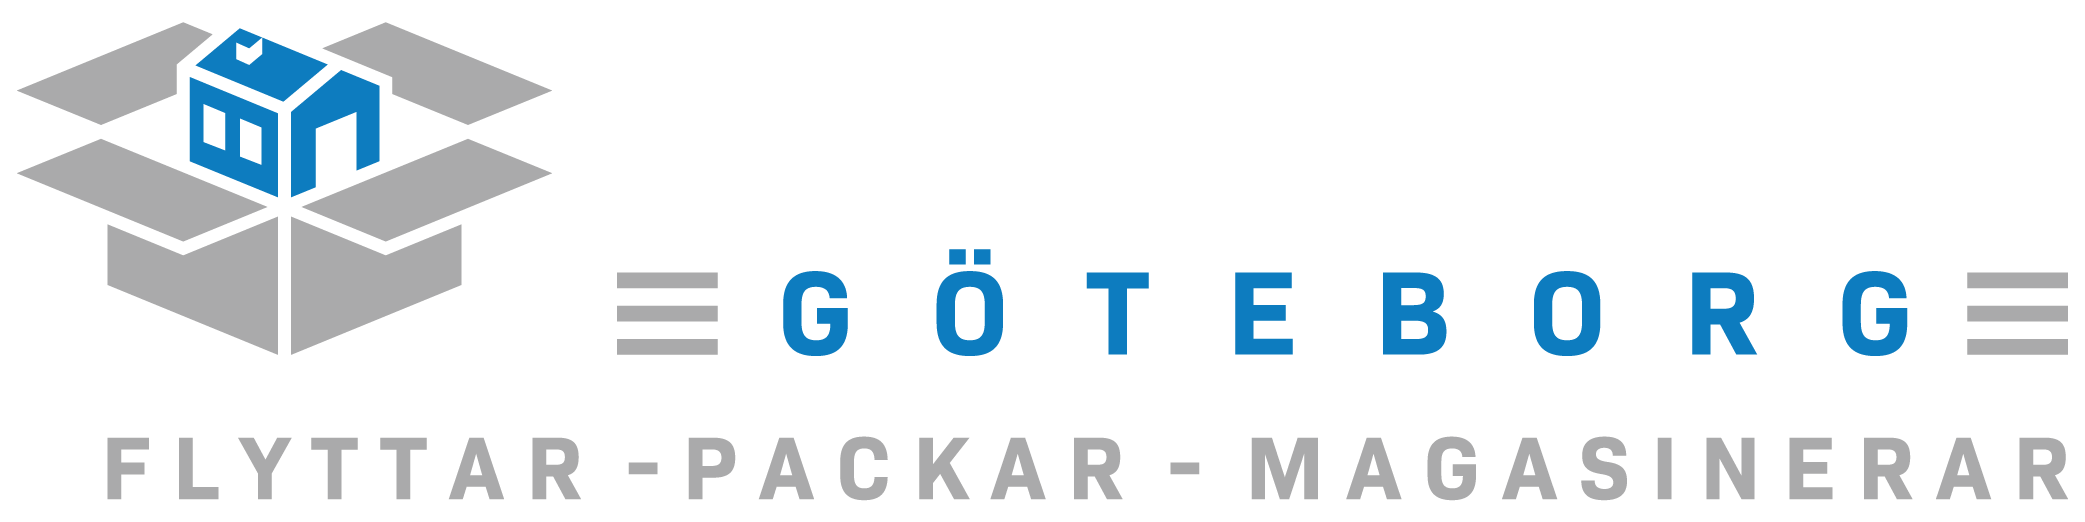 TUNGFLYTT Flyttfirma i Göteborg